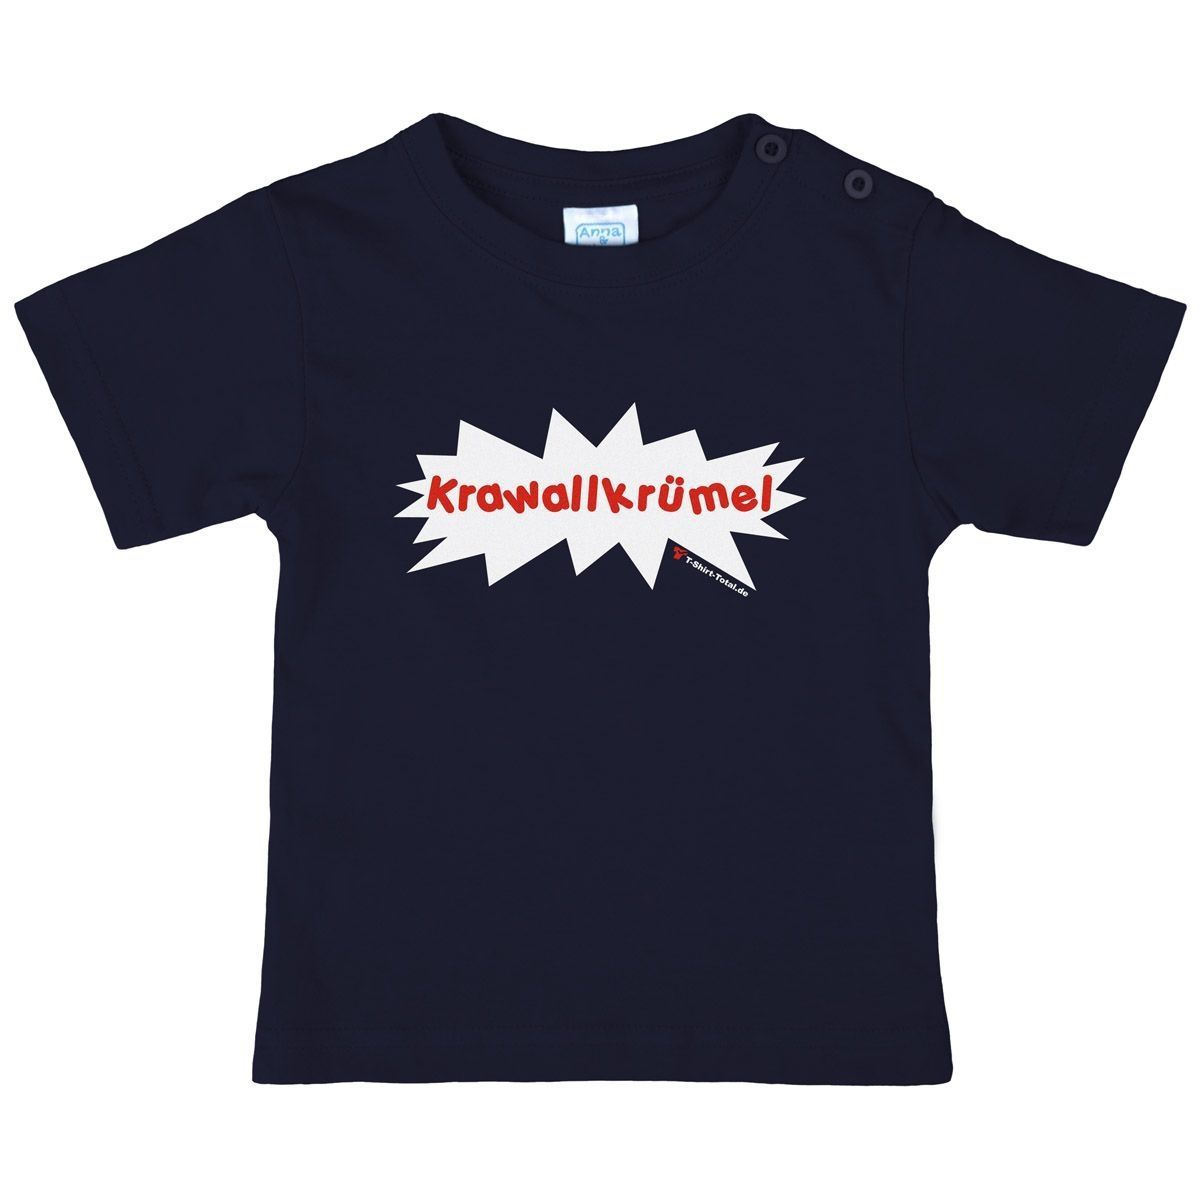 Krawallkrümel Kinder T-Shirt navy 134 / 140